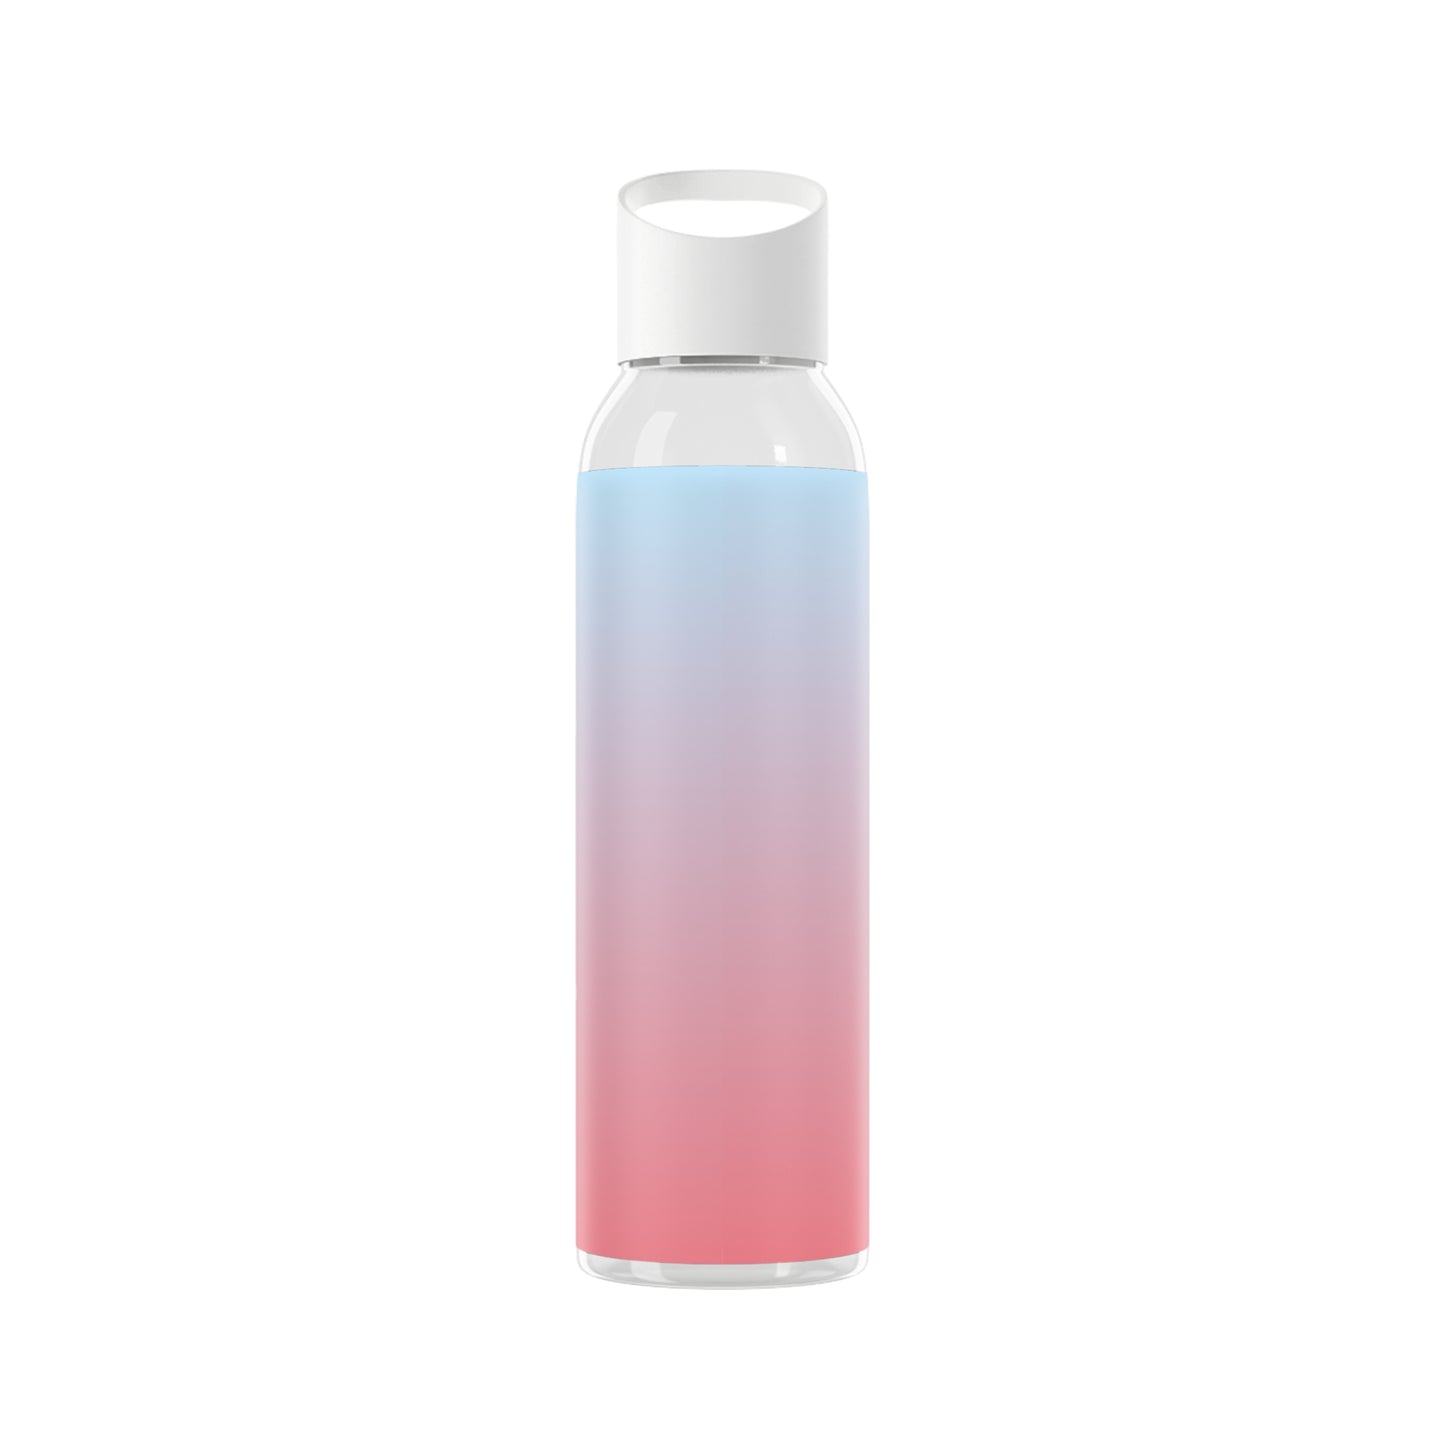 FLAKOUT Sport Sky Water Bottle